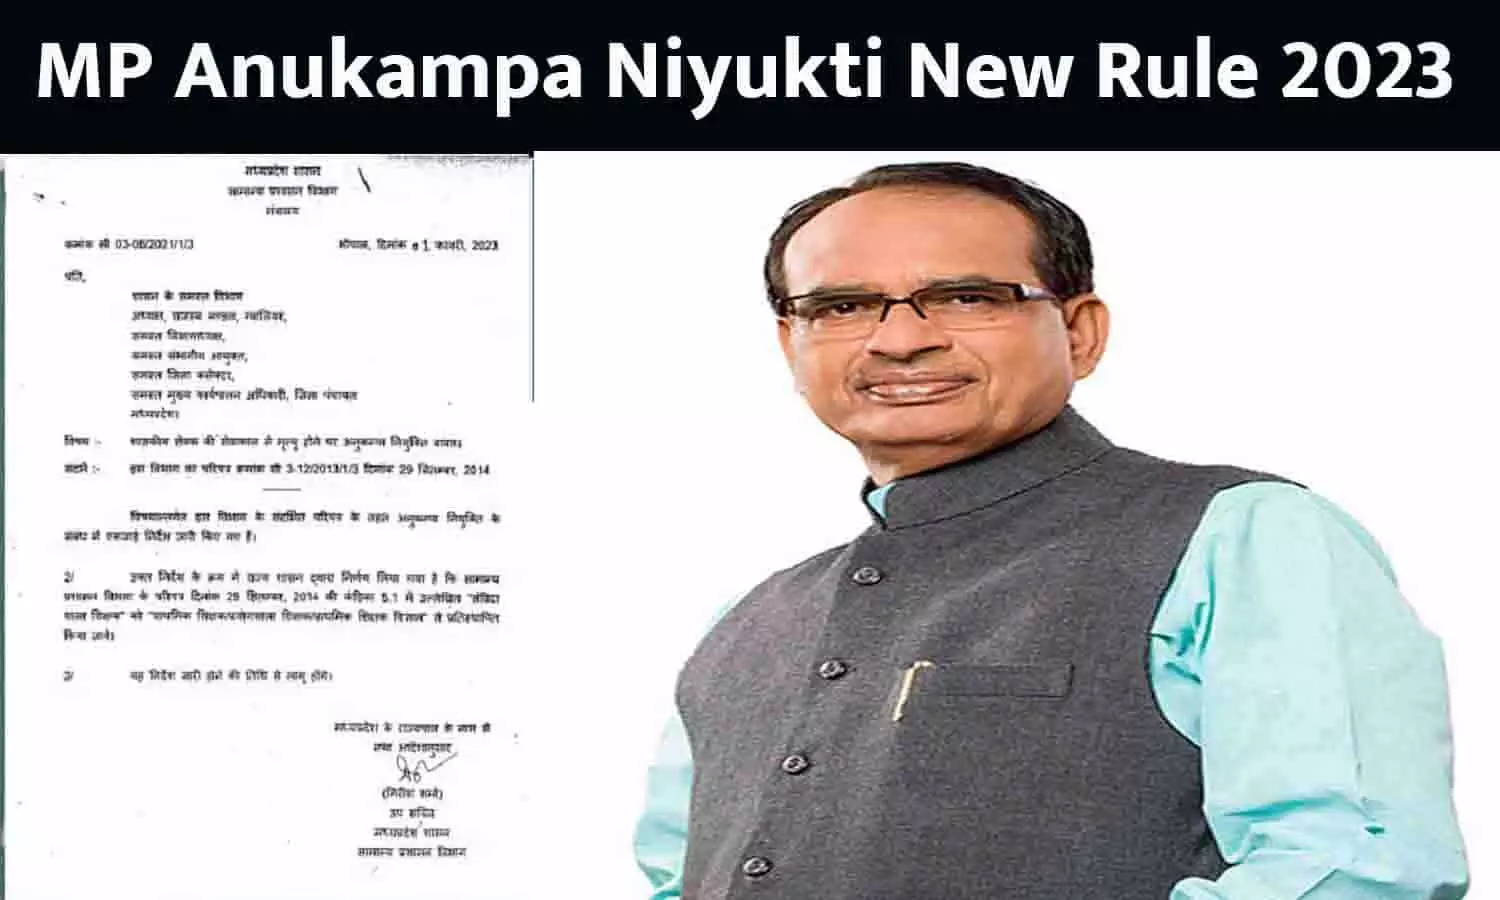 MP Anukampa Niyukti New Rule 2023: मध्य प्रदेश सरकार ने अनुकंपा नियुक्तियों के नियमो में किया बदलाव, अब इन्हें भी मिल सकता है लाभ, Notification जारी